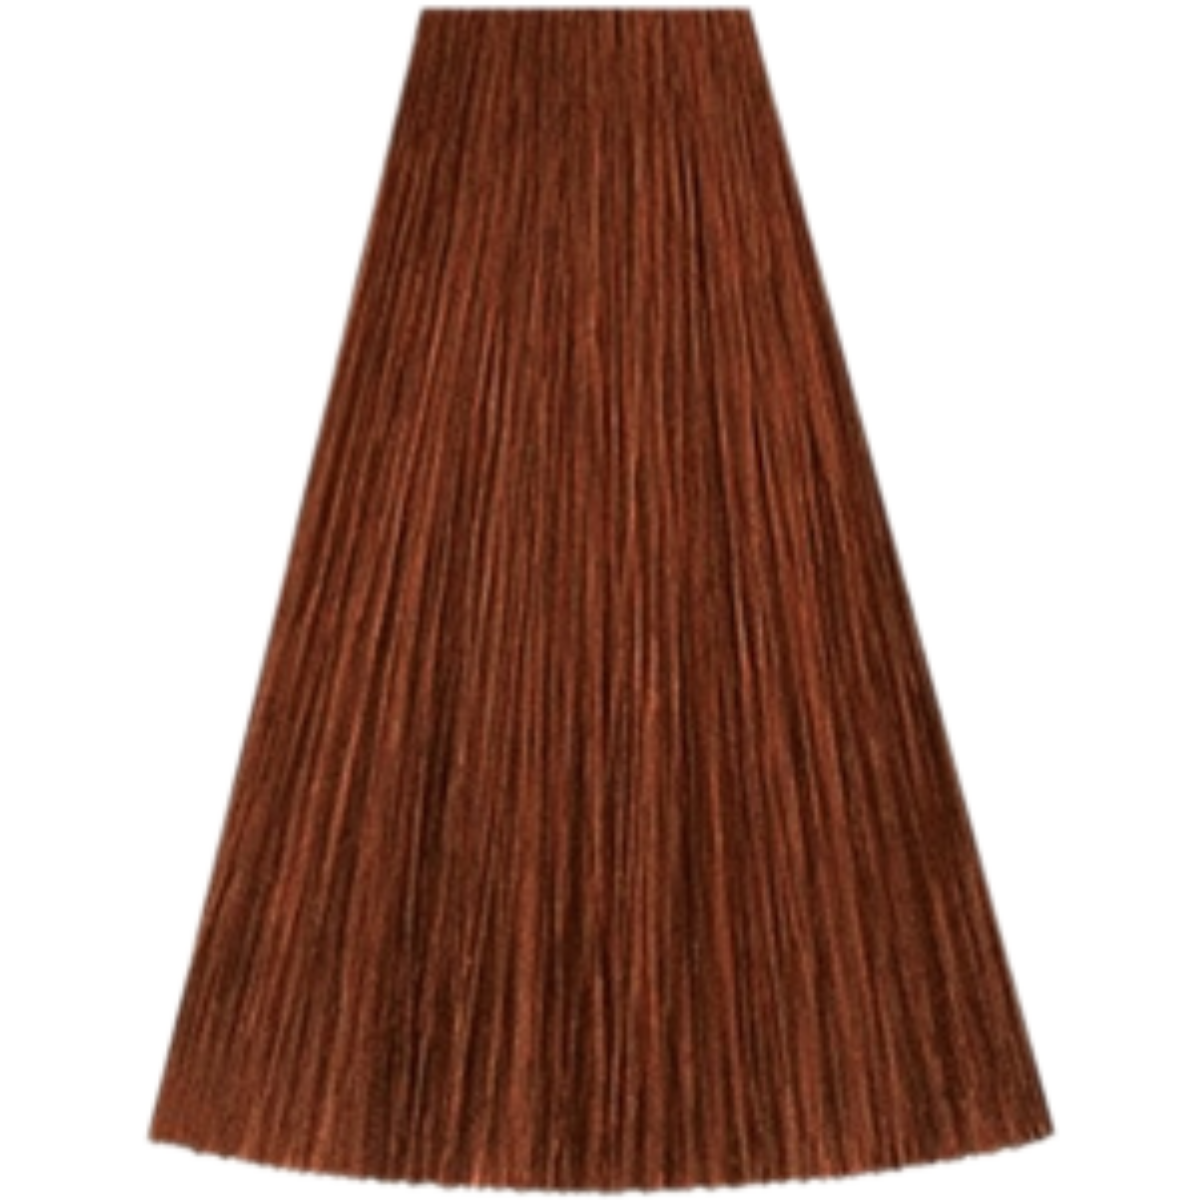 צבע שיער גוון 7/43 MEDIUM BLONDE RED GOLD קאדוס KADUS צבע לשיער 60 גרם